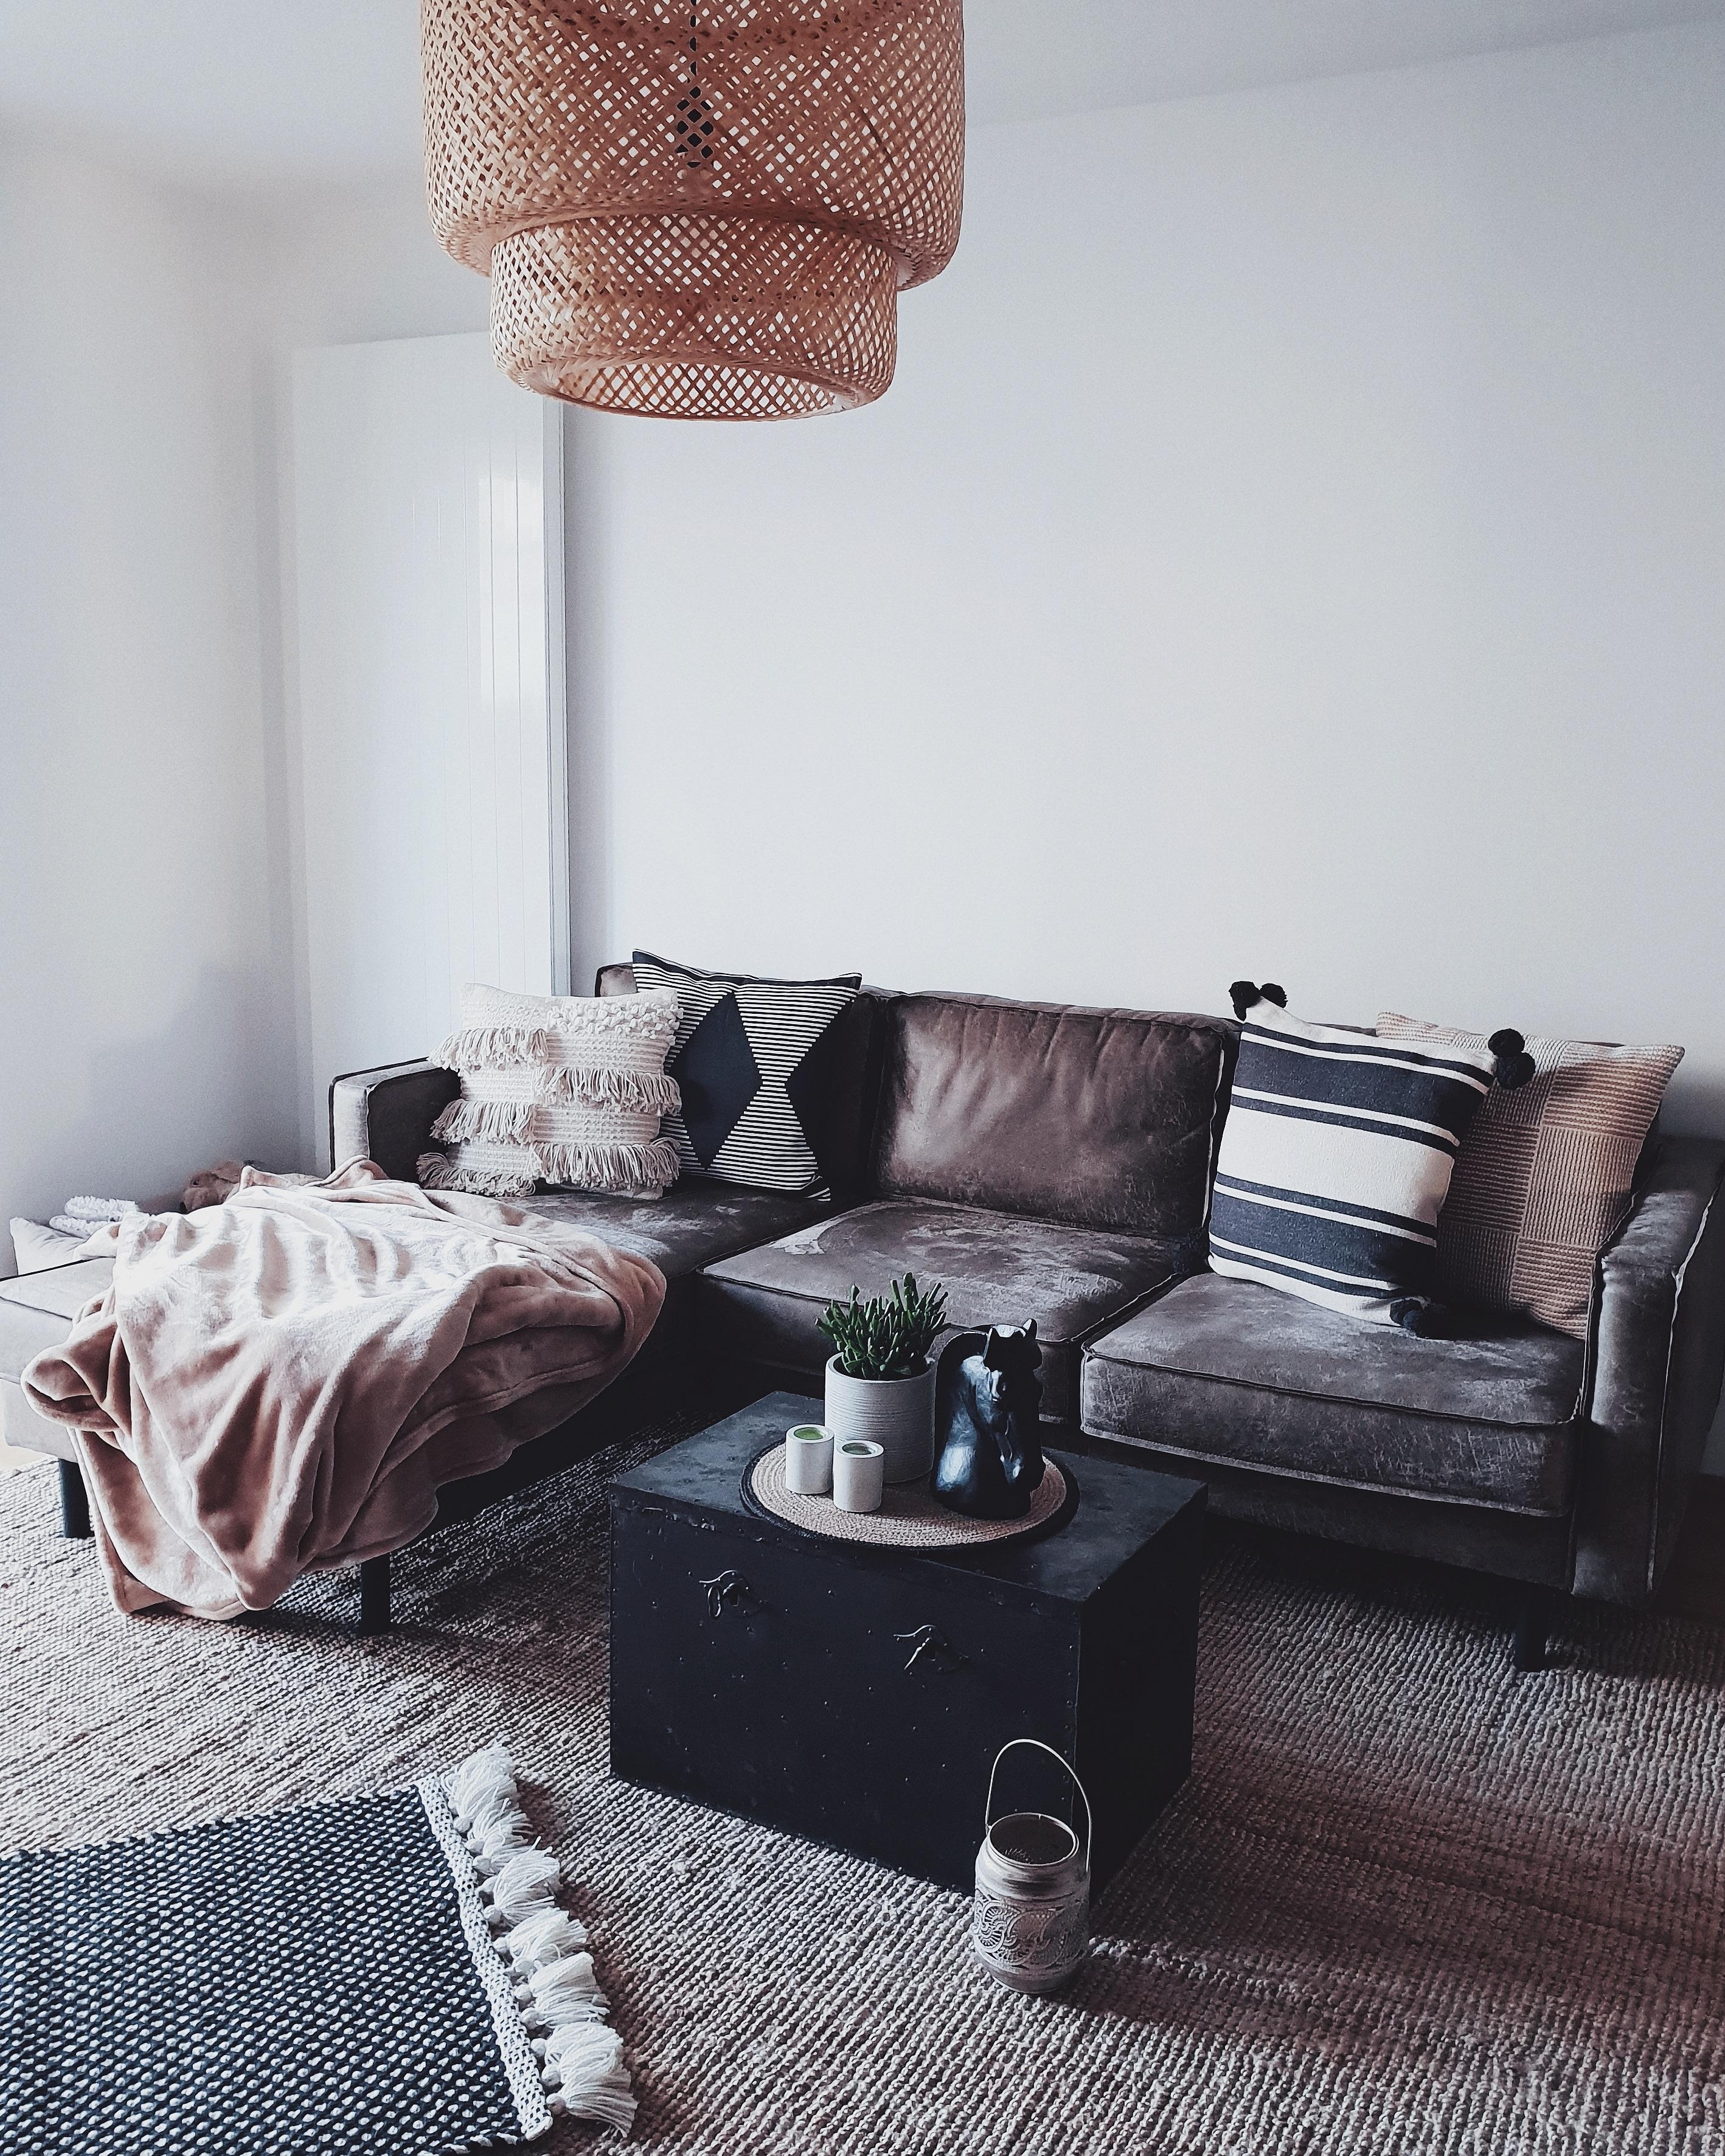 #wohnzimmer 
#livingroom #homeinspo #homedetails #boho